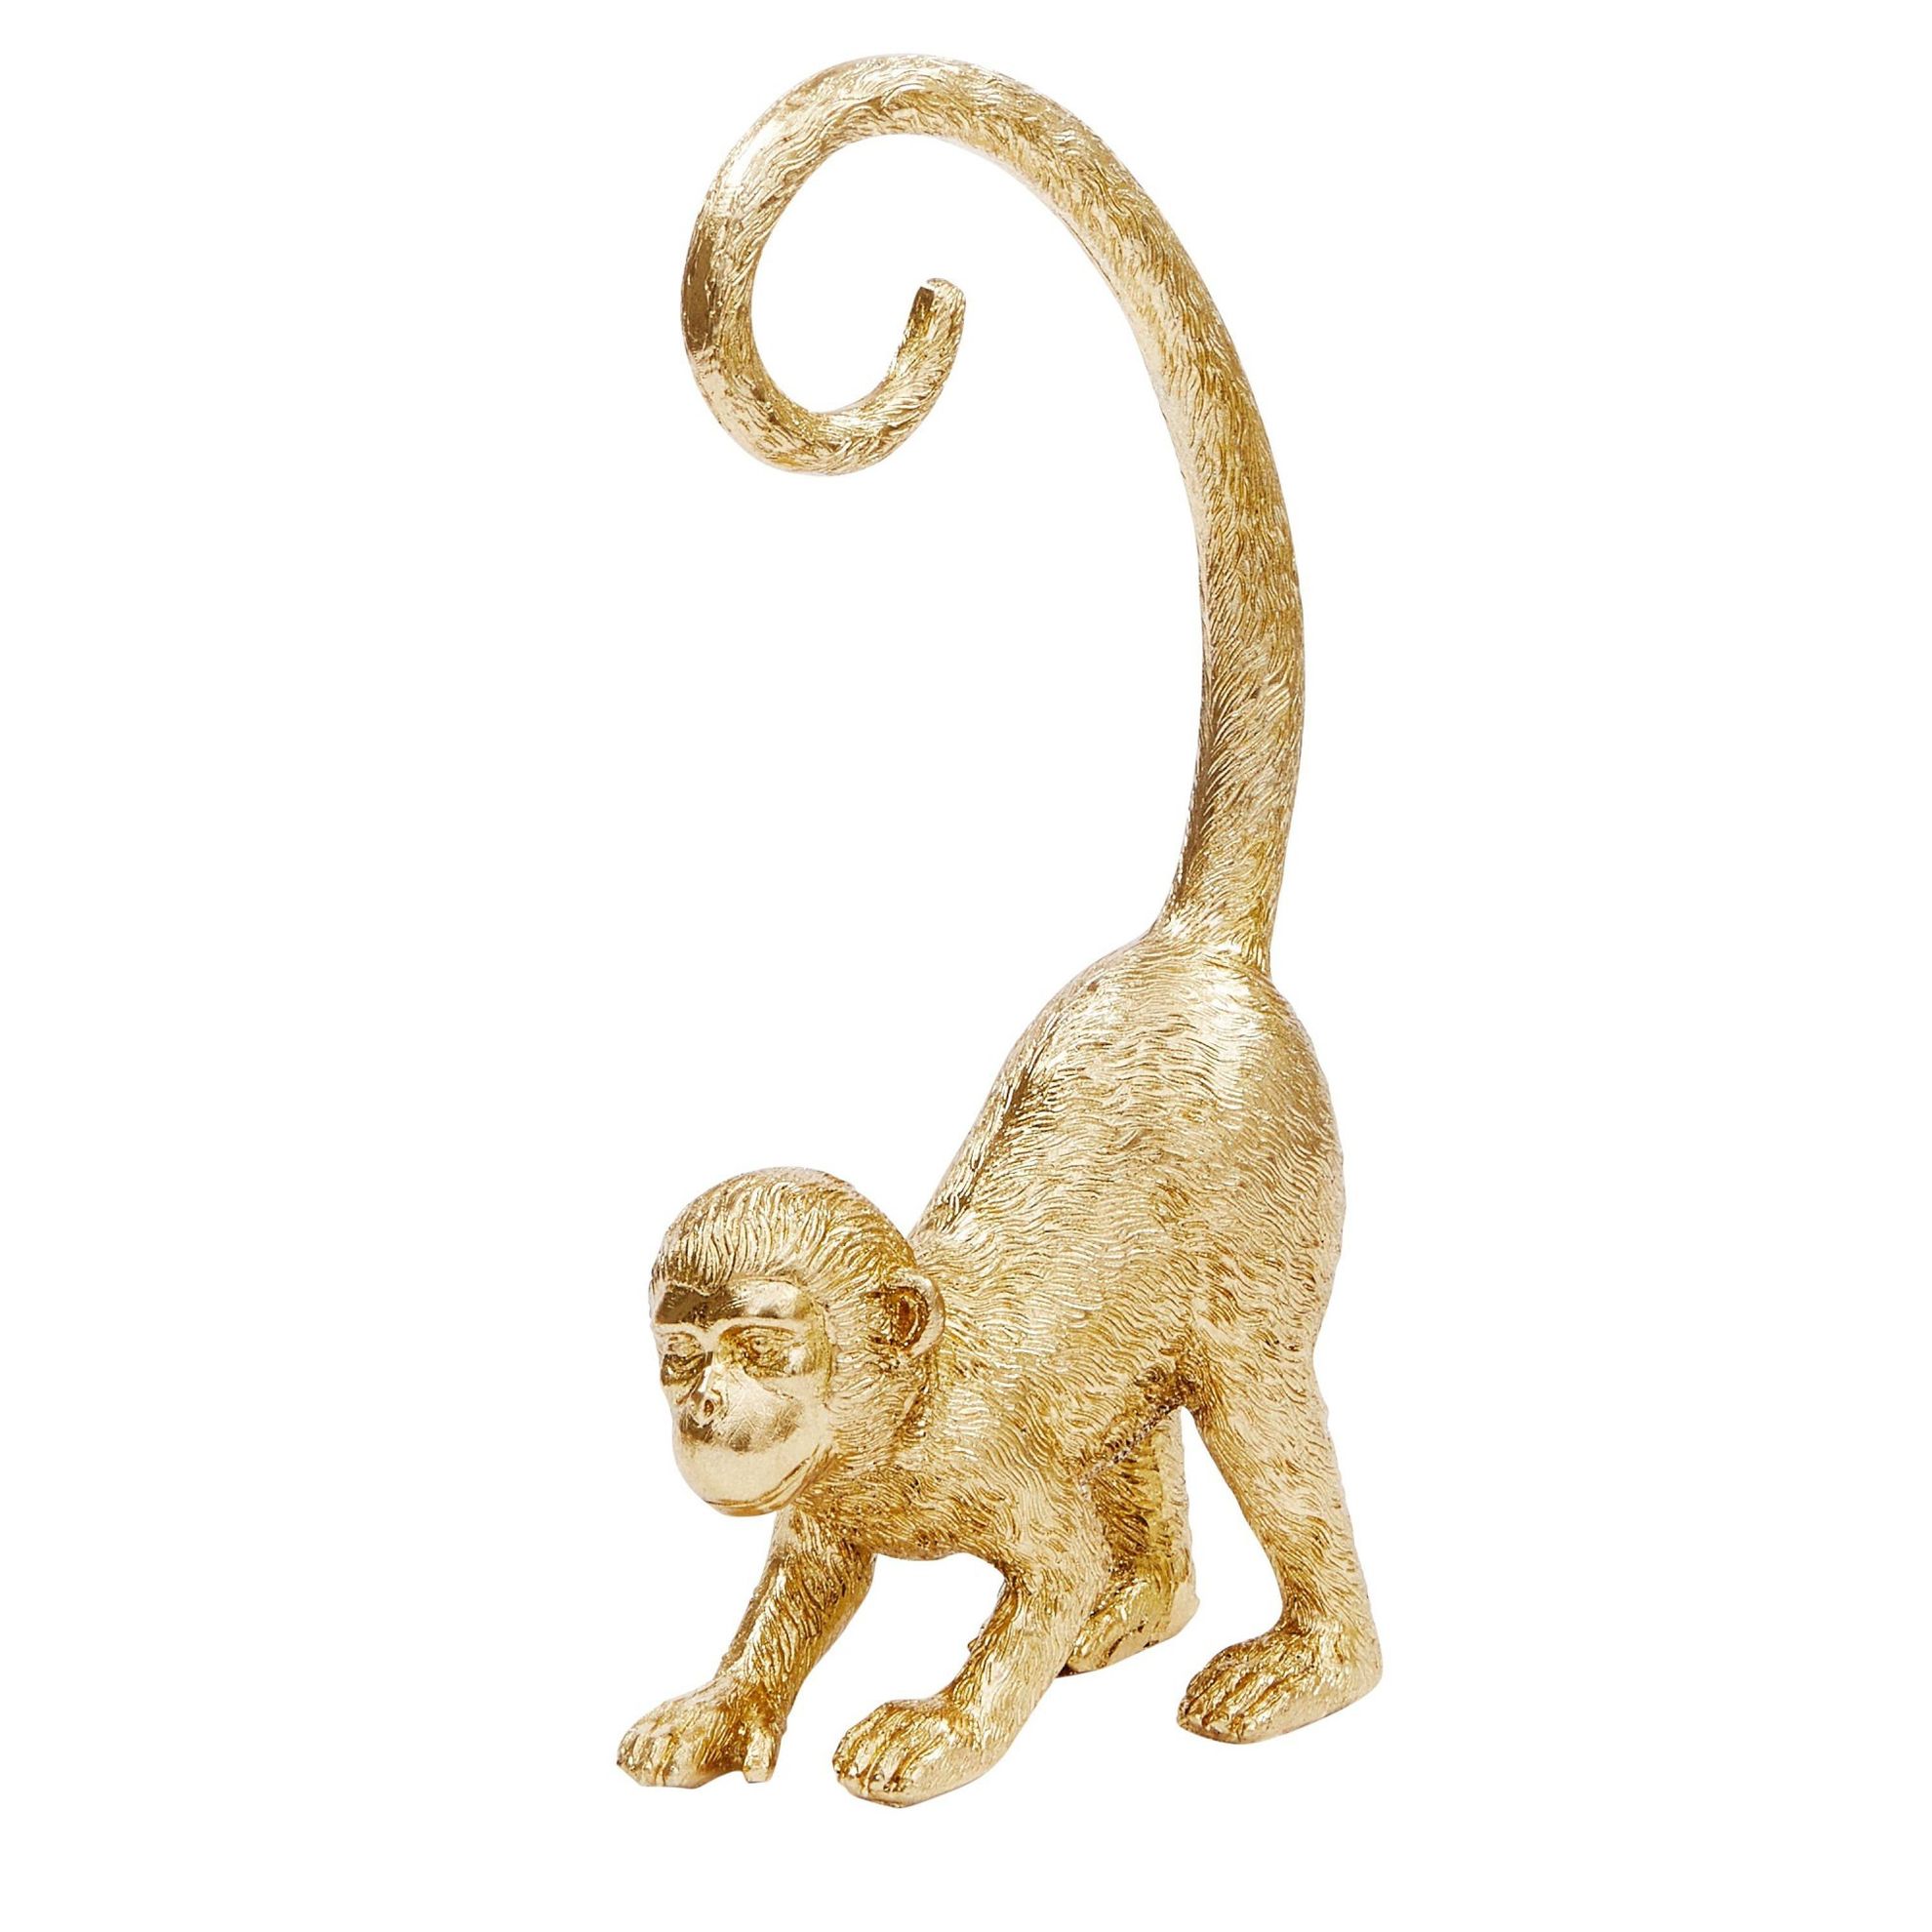 Deko-Figur Affe Goldfarben jetzt bei Weltbild.ch bestellen